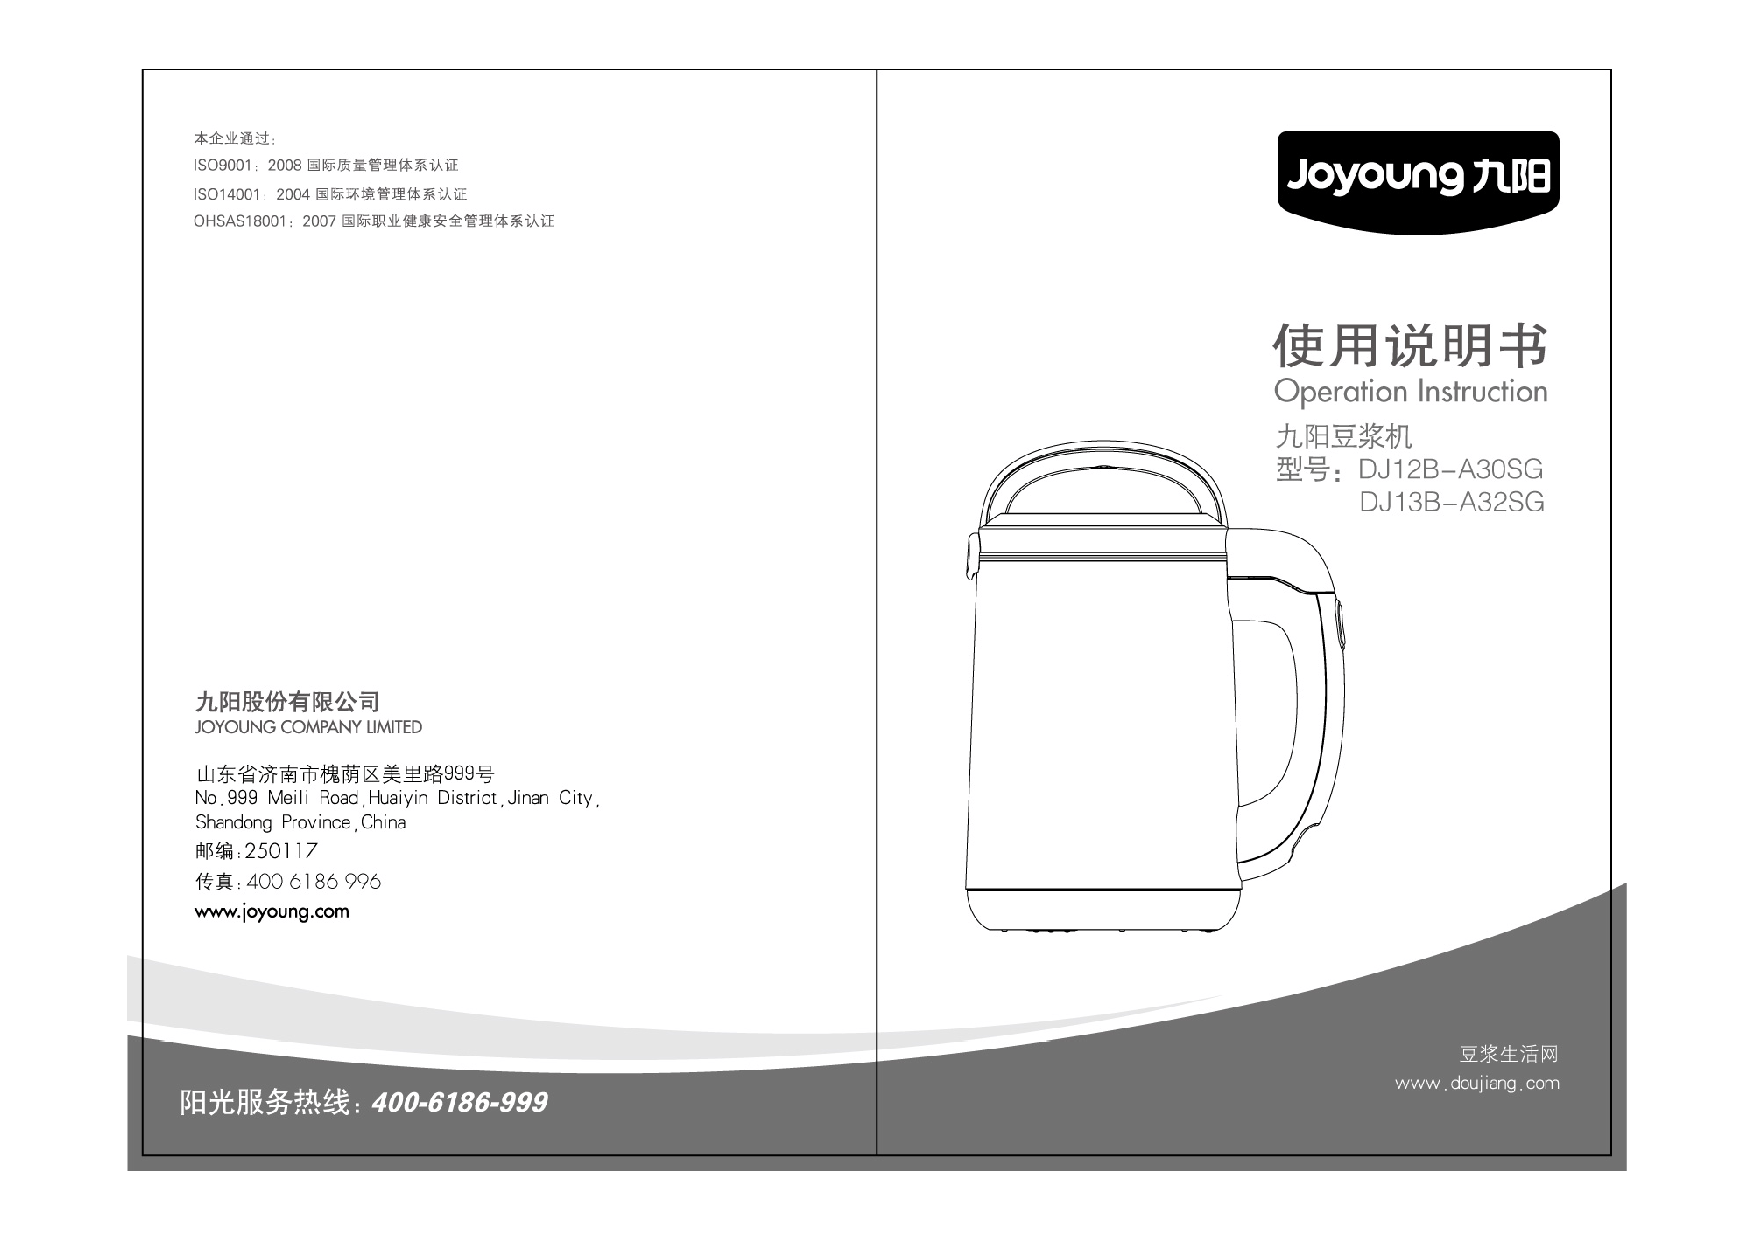 九阳 Joyyoung DJ12B-A30SG 使用说明书 封面